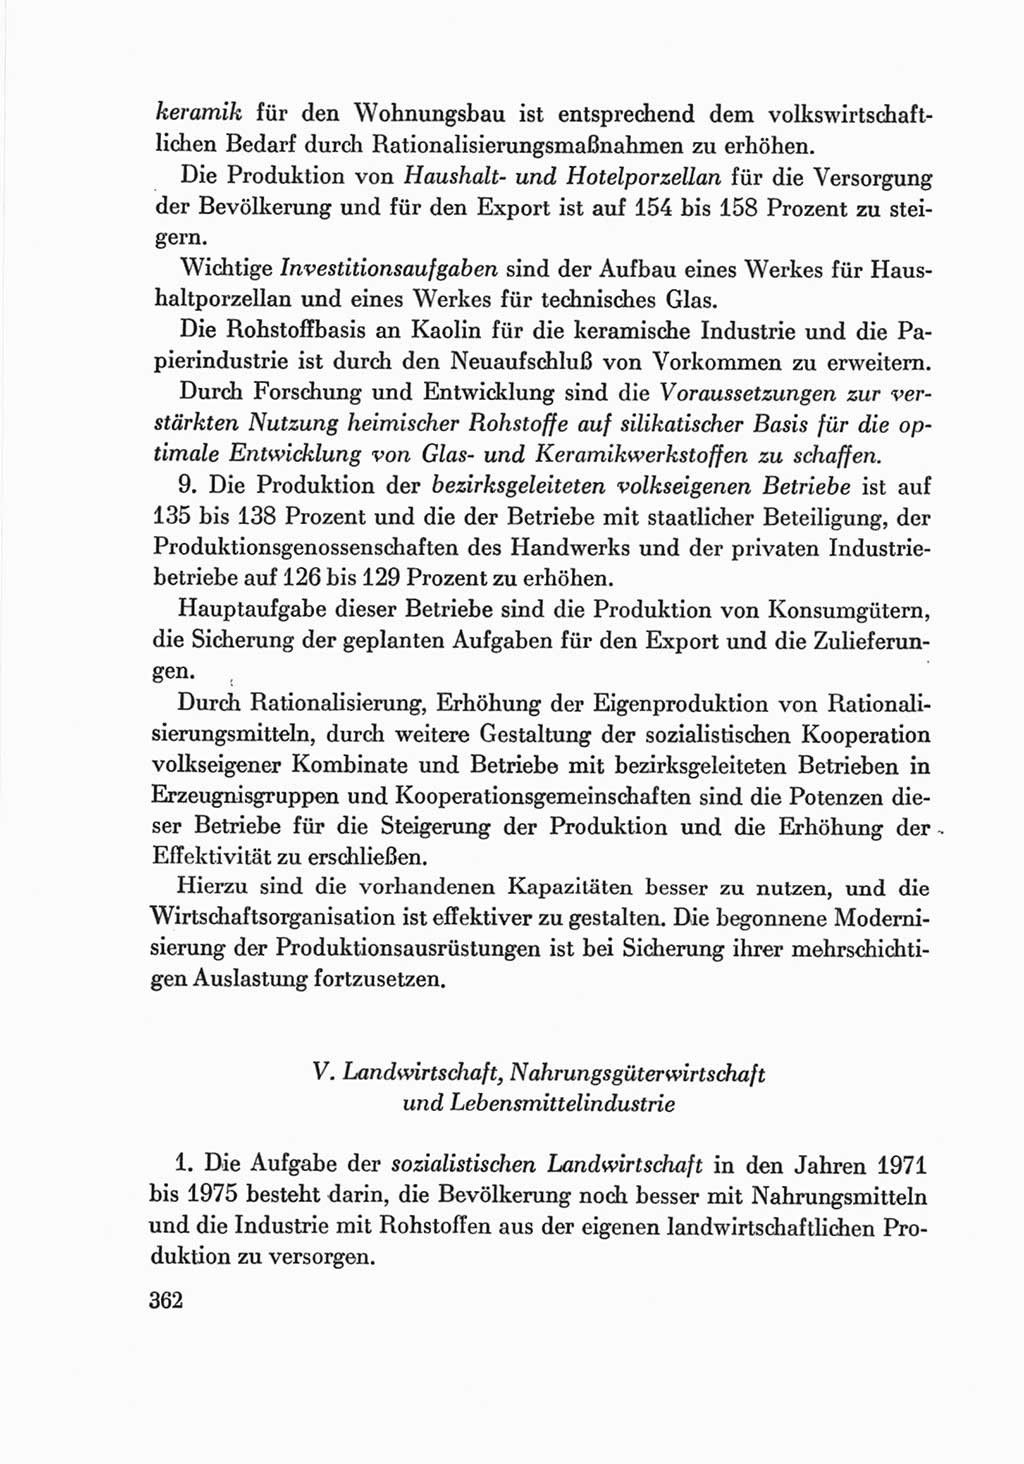 Protokoll der Verhandlungen des Ⅷ. Parteitages der Sozialistischen Einheitspartei Deutschlands (SED) [Deutsche Demokratische Republik (DDR)] 1971, Band 2, Seite 362 (Prot. Verh. Ⅷ. PT SED DDR 1971, Bd. 2, S. 362)